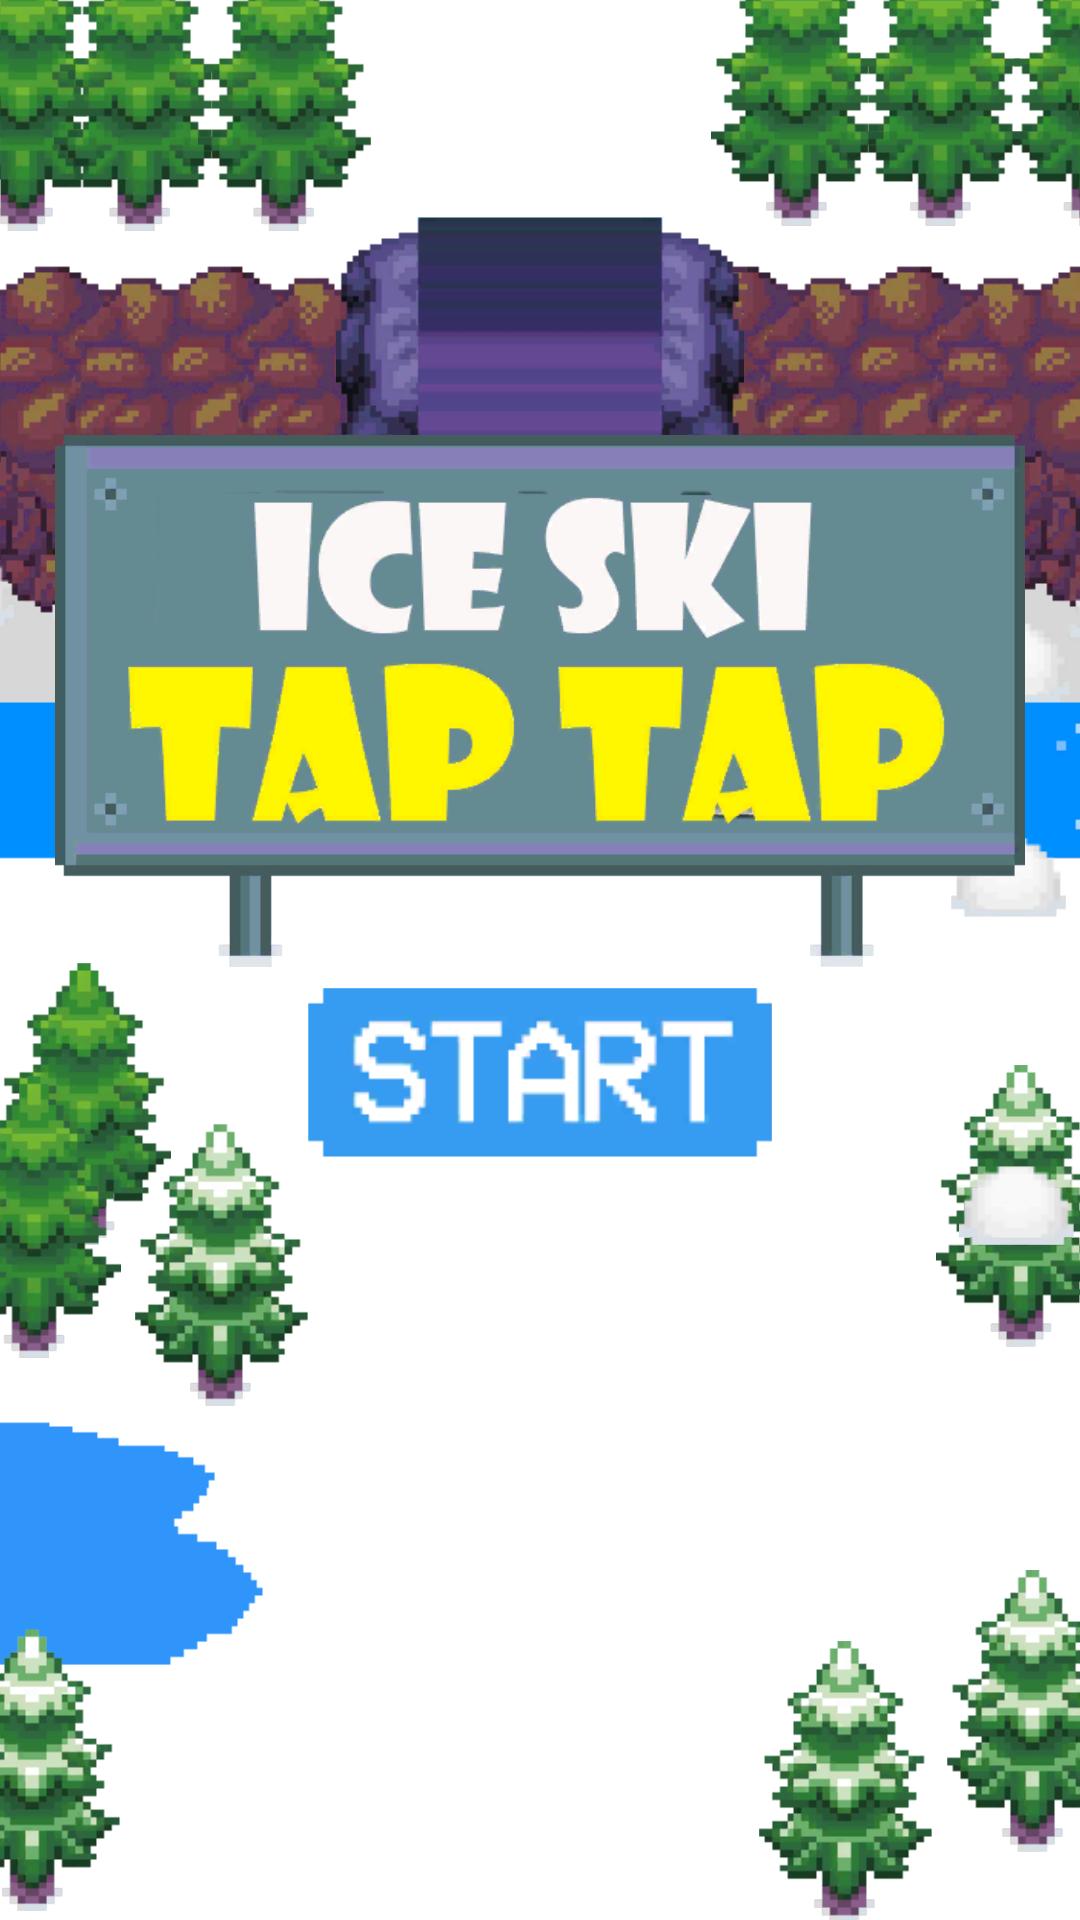 Пиксельная тап тап игра на андроид. Ski tap группа. Water Ski - one tap game. Ice skis